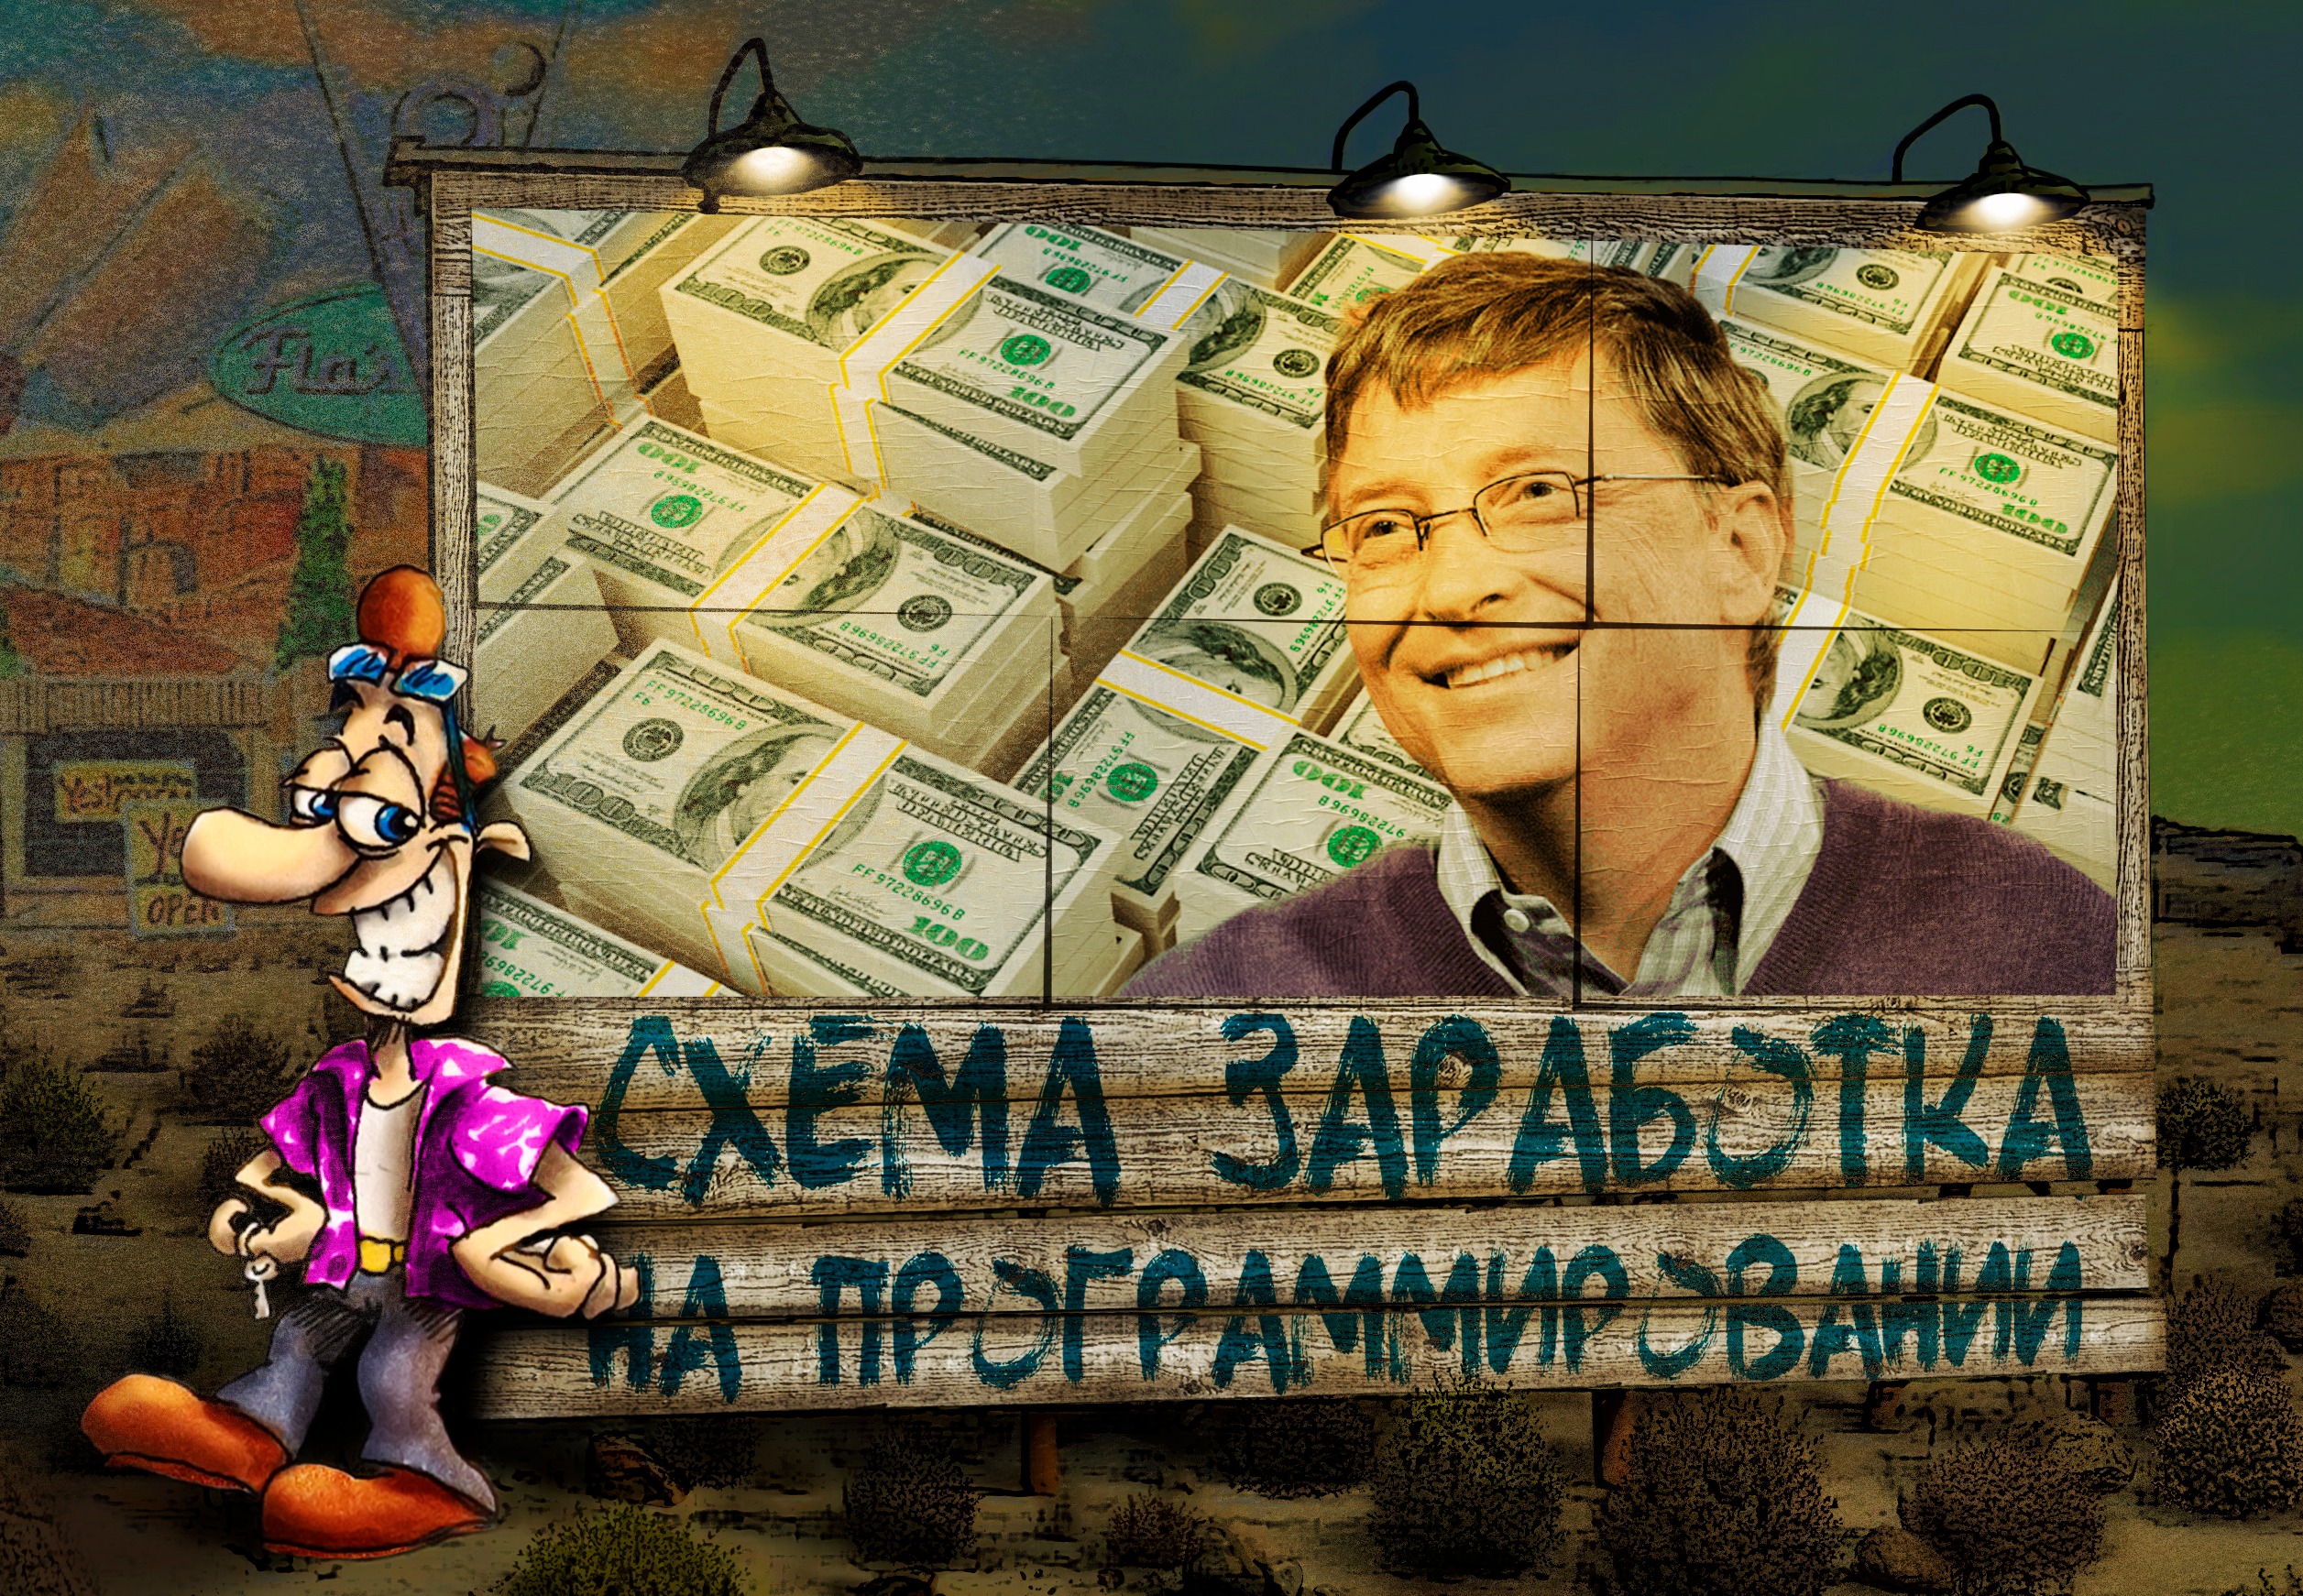 Зарабатываем деньги в индустрии игр и на платформе YouTube без вложений, получая от 3 до 4 тысяч рублей за заявку